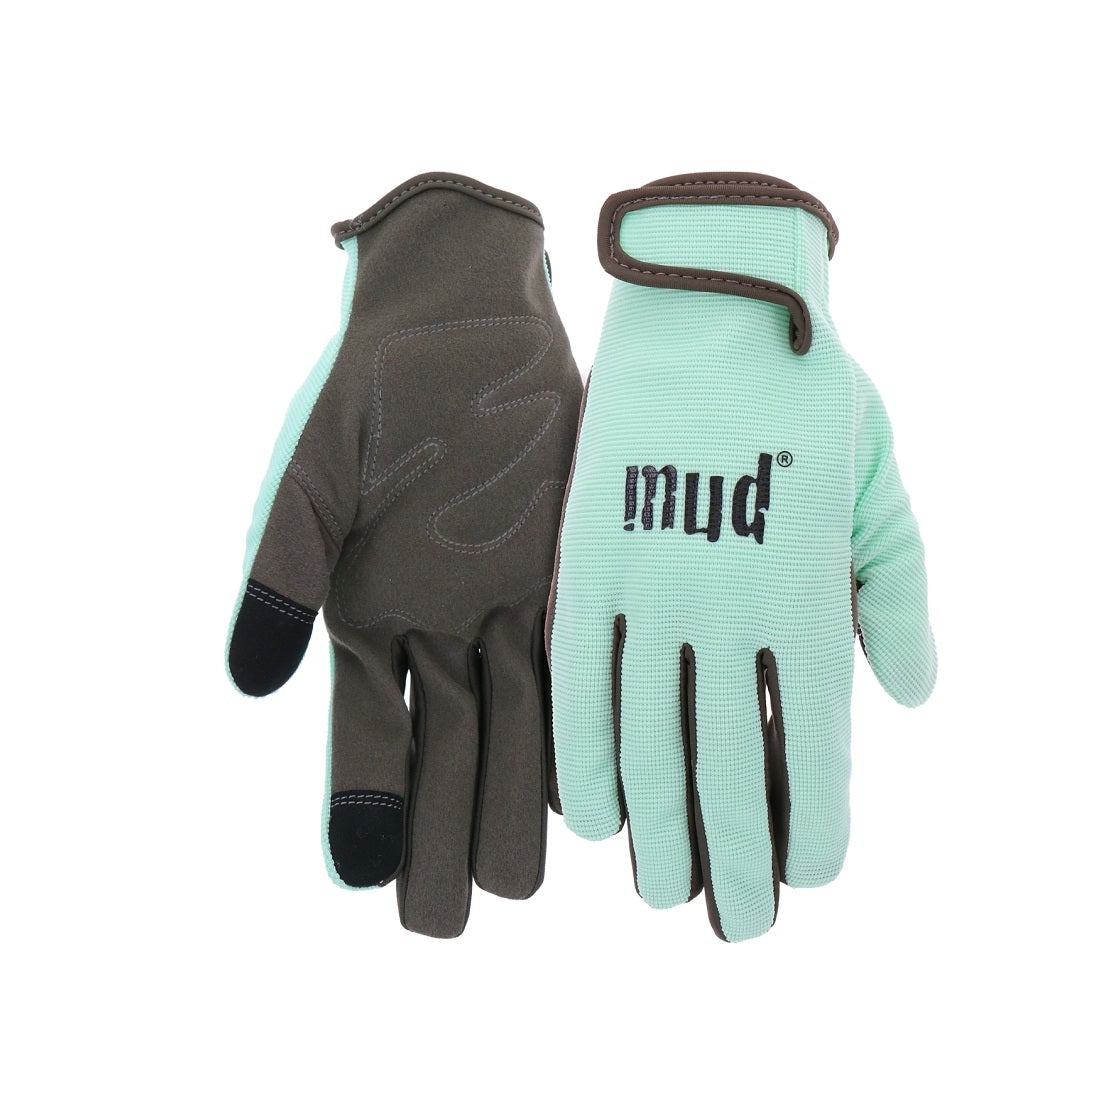 Mud MD51001MT-WSM Womens Gardening Gloves, S/M